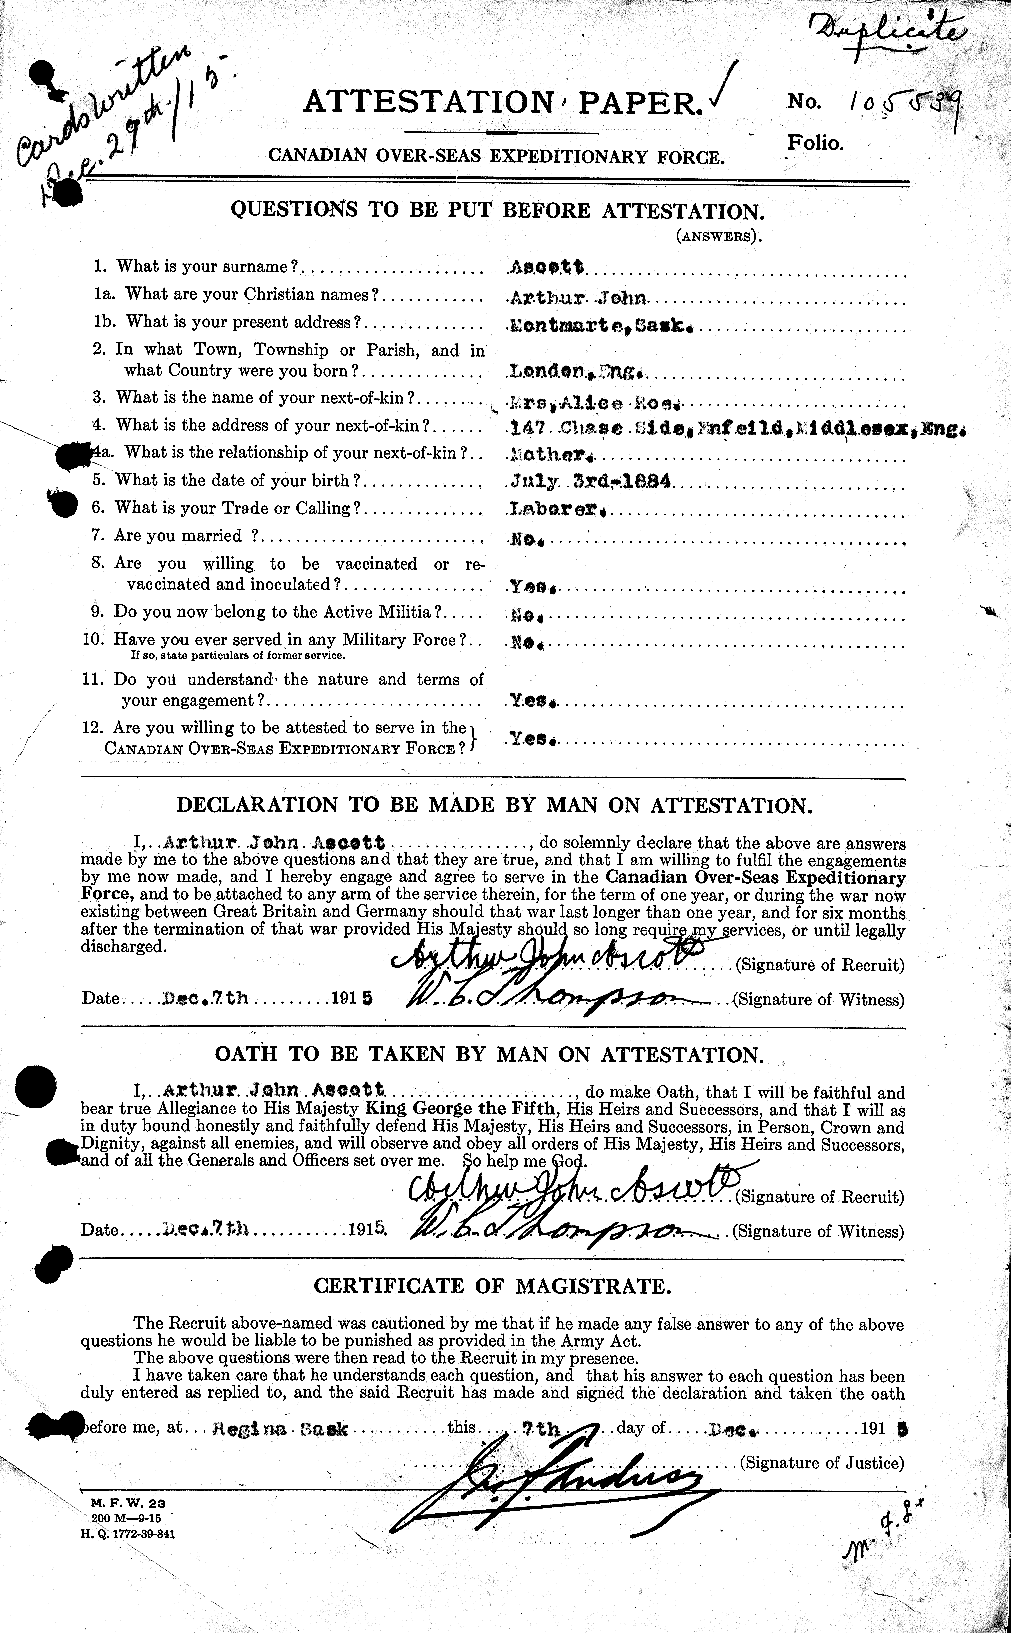 Dossiers du Personnel de la Première Guerre mondiale - CEC 214679a